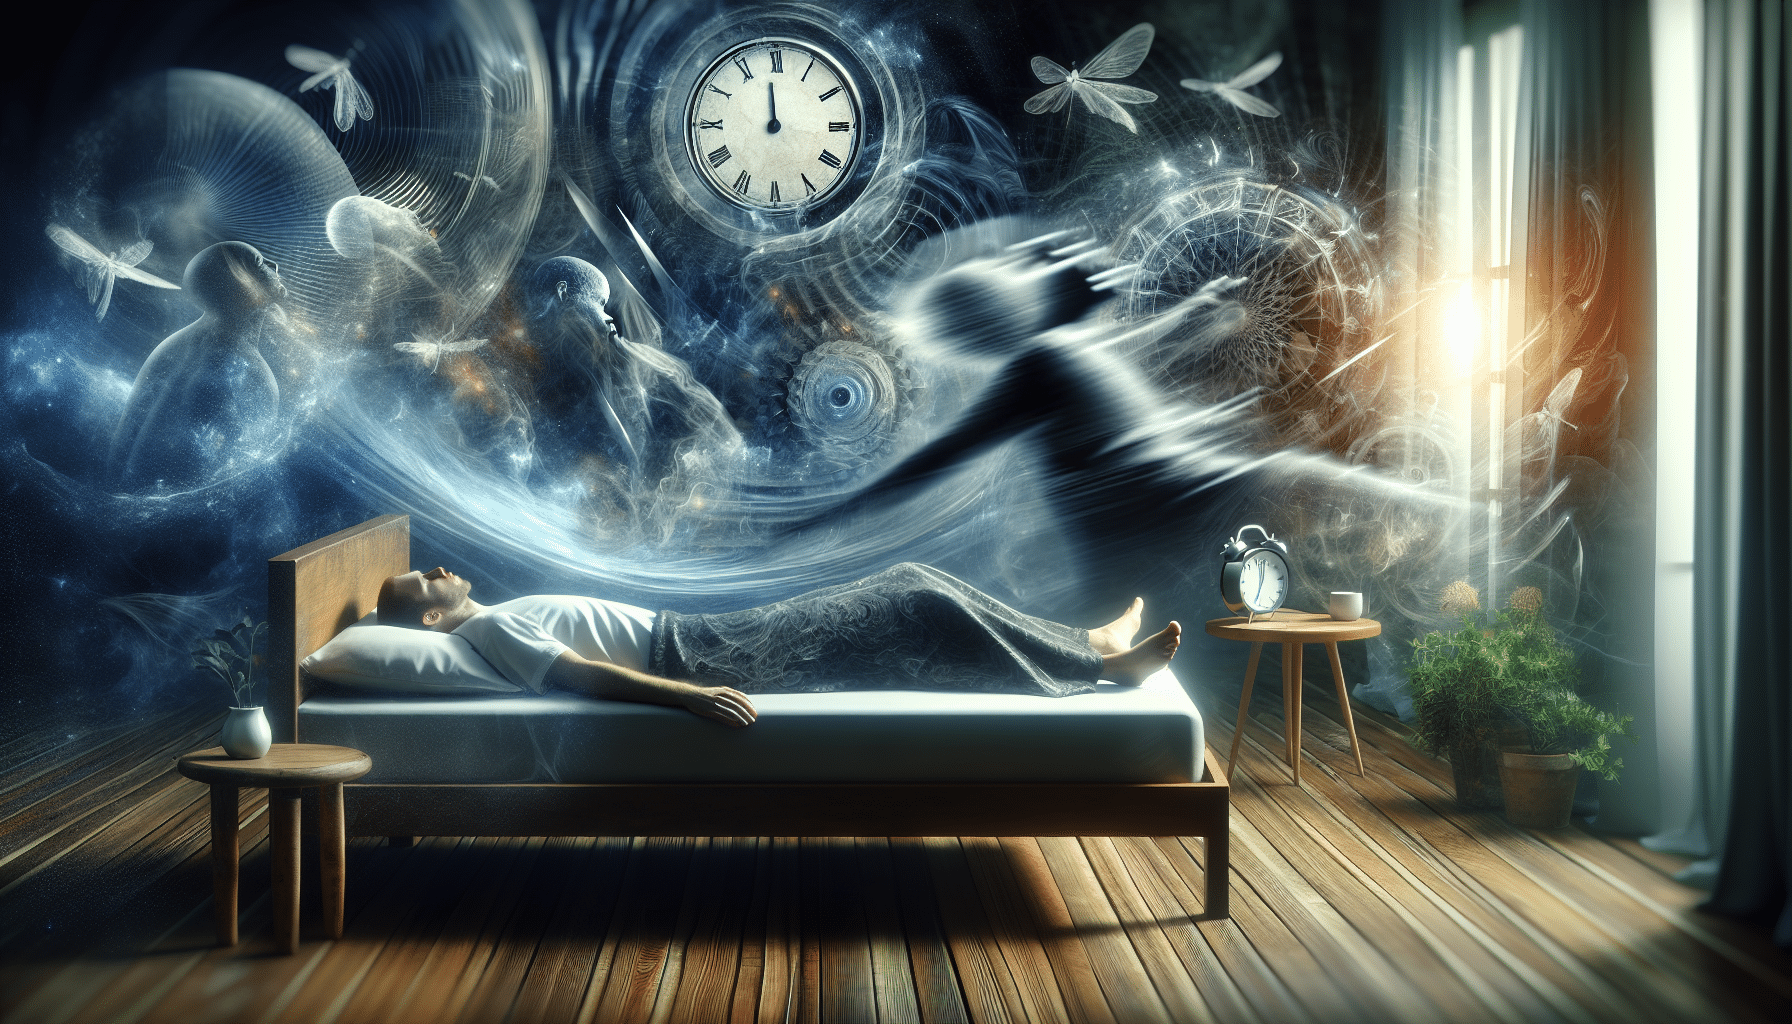 Eine künstlerische Darstellung von hypnagogen Halluzinationen und Schlaflähmungen während des Übergangs vom Wach- zum Schlafzustand.